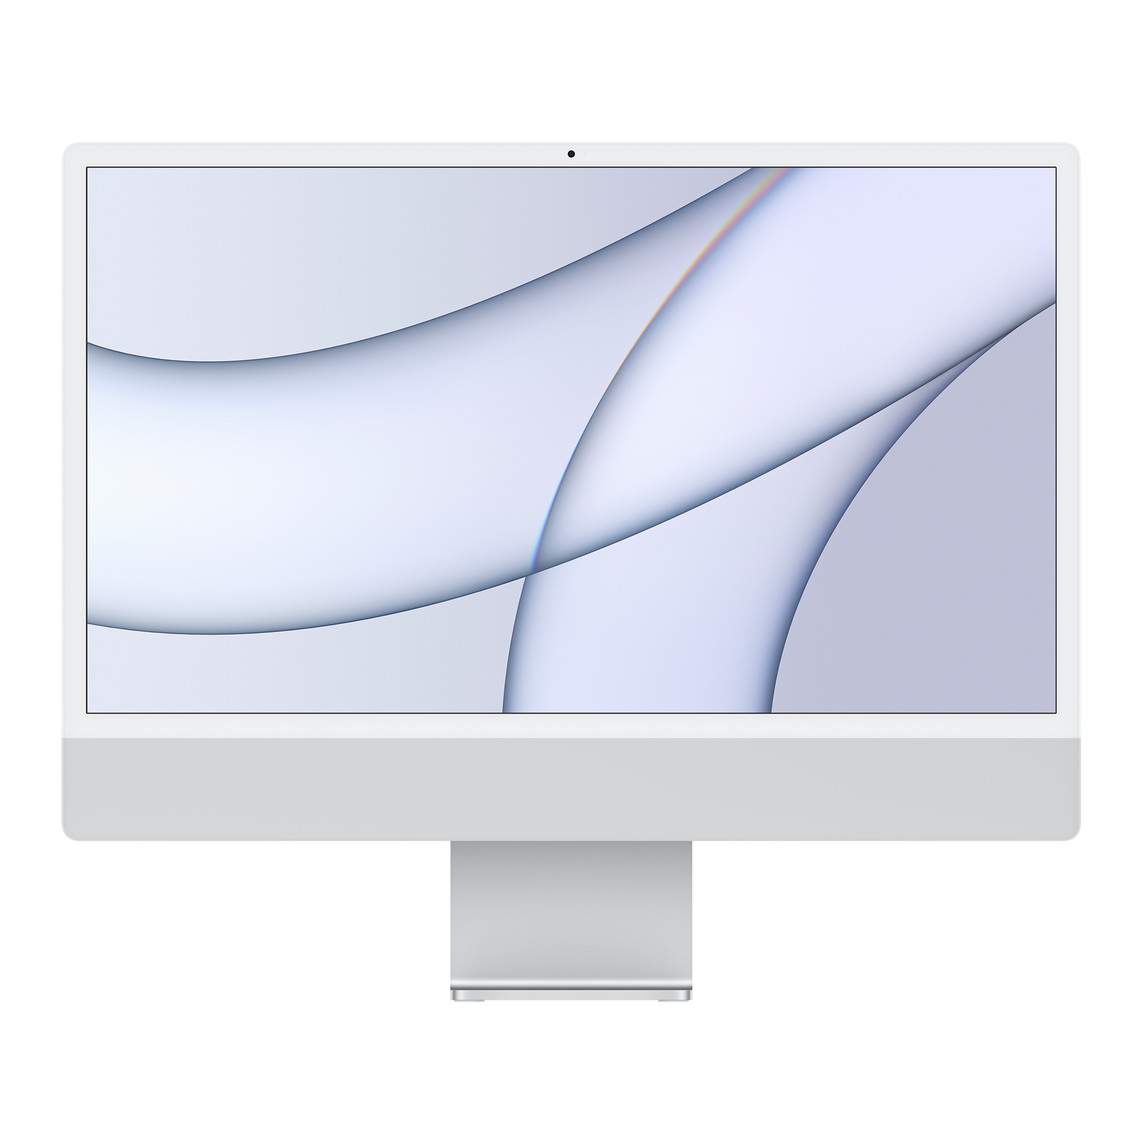 iMac, vooraanzicht, witte rand rond display, zilverkleurige behuizing en aluminium standaard